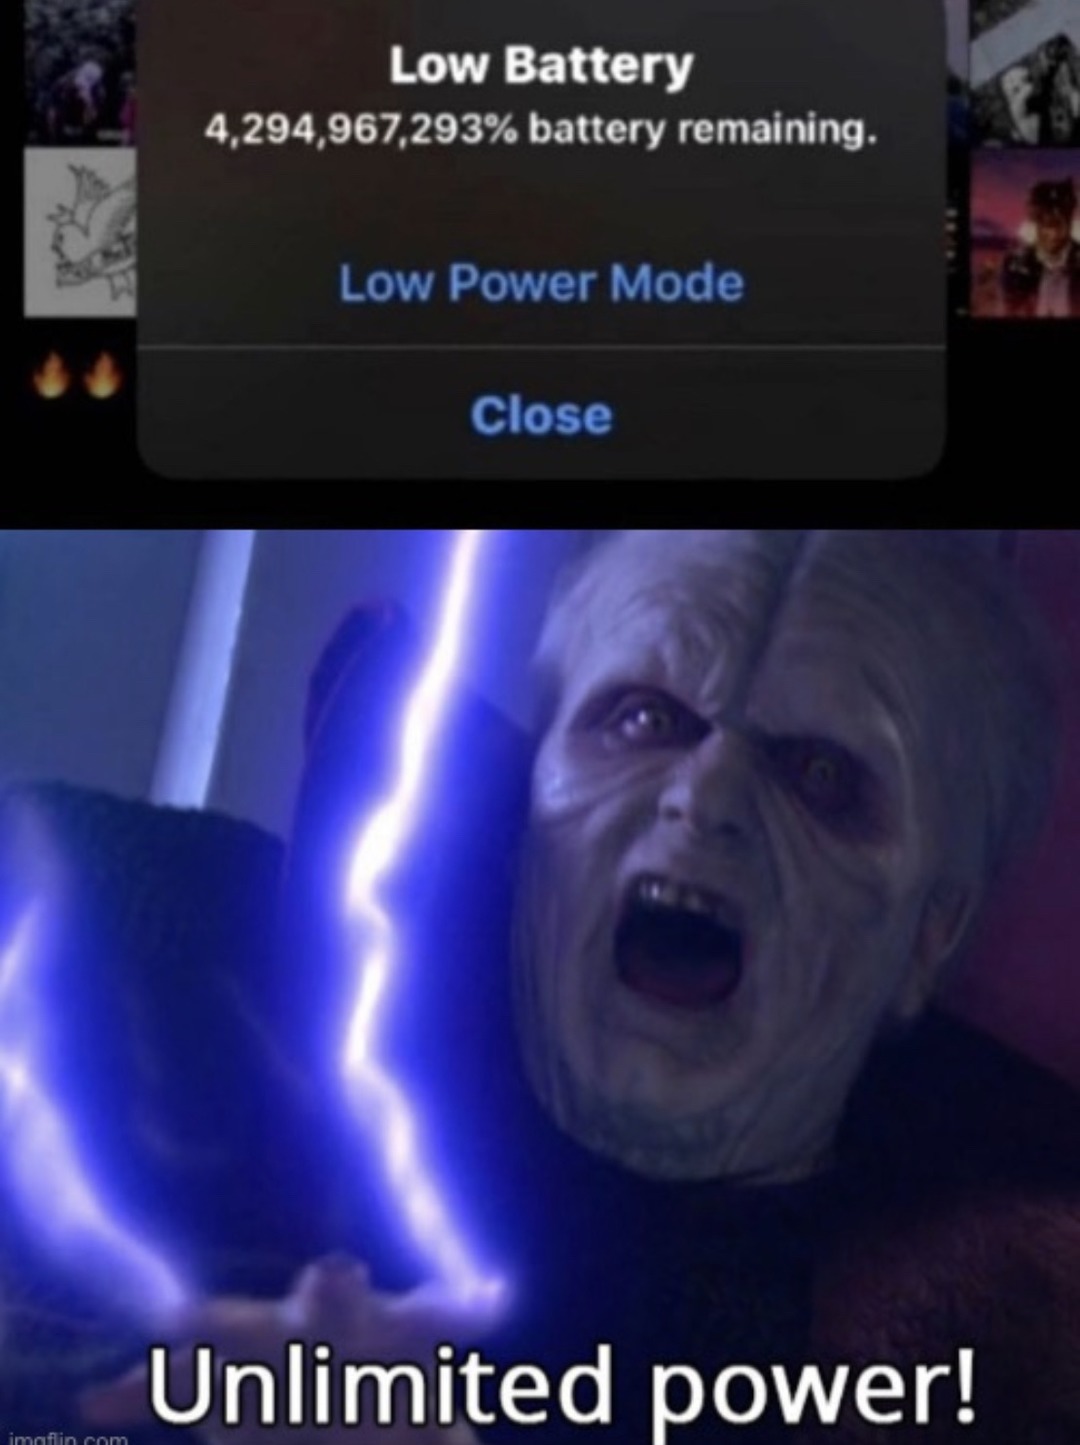 unlimited power - meme